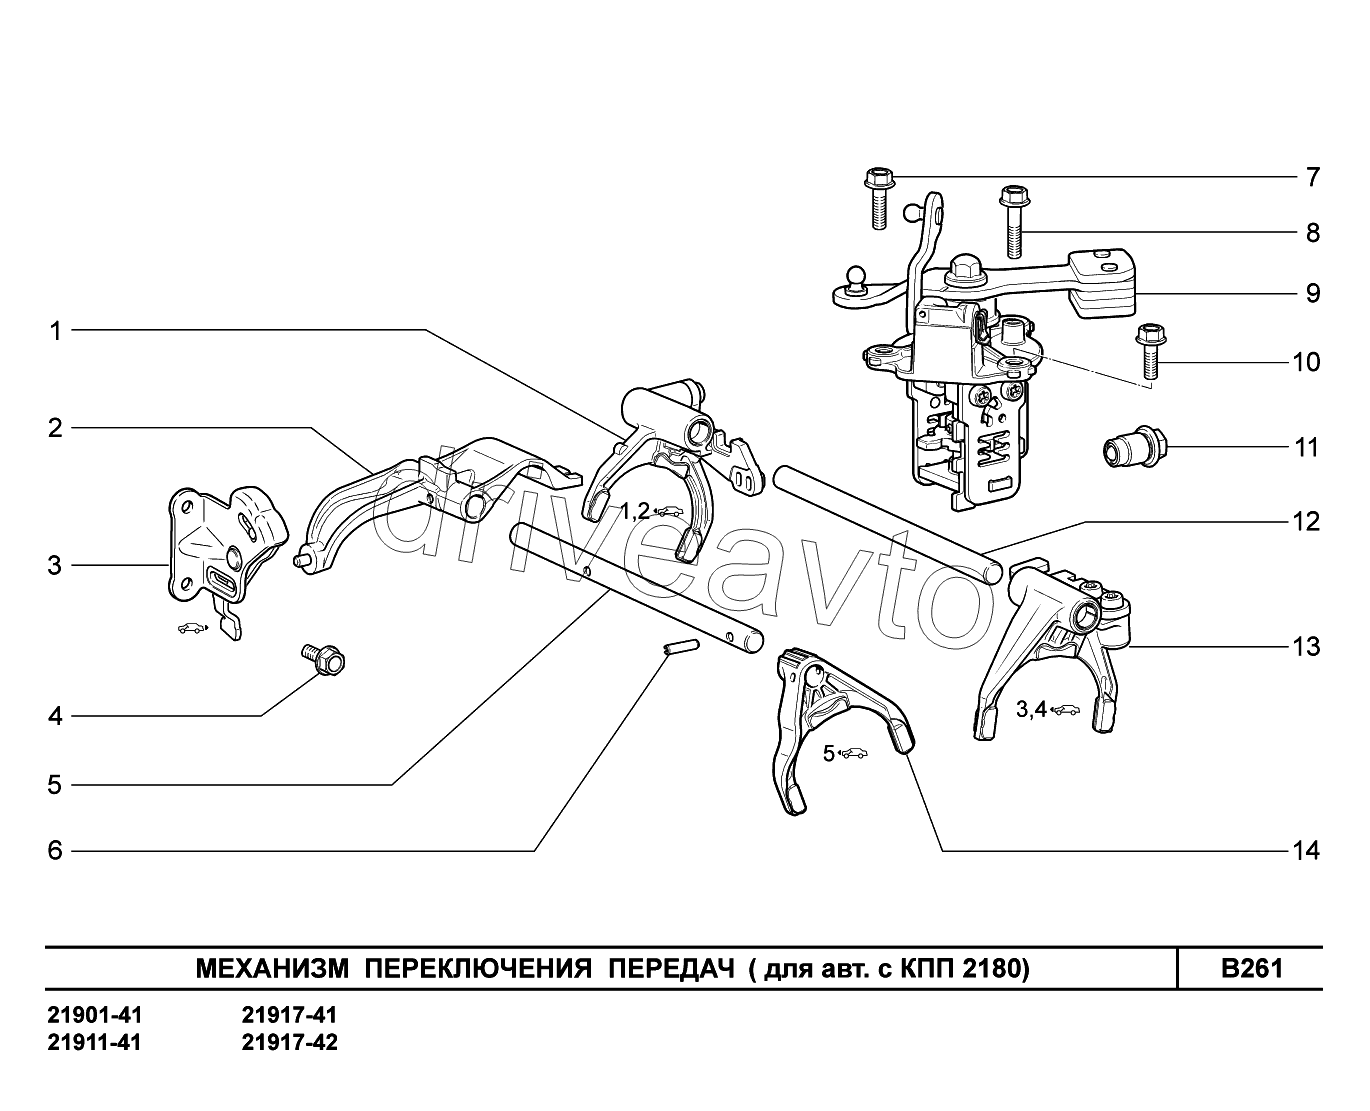 B261. Механизм переключения передач